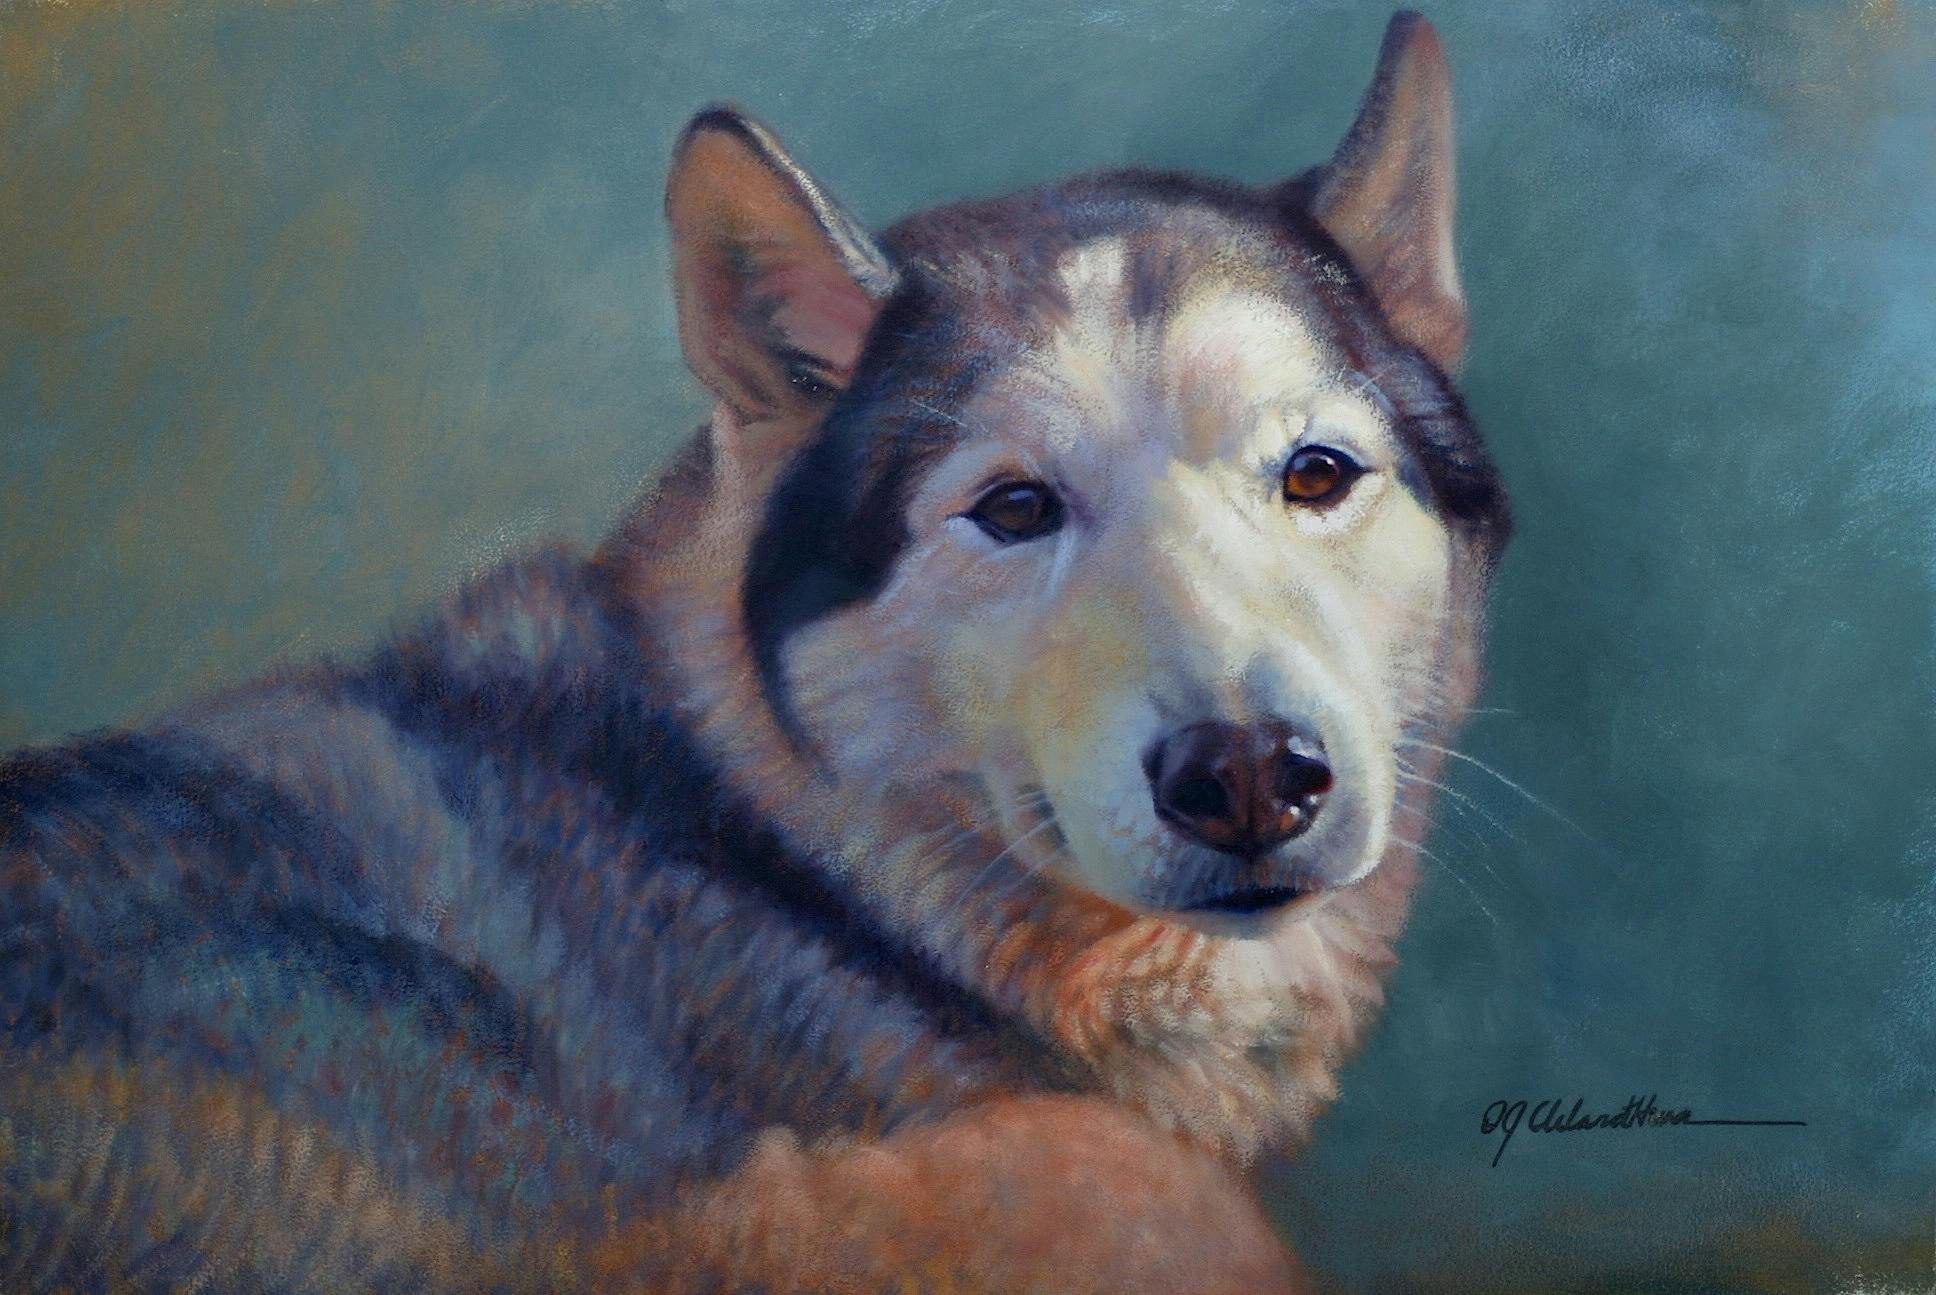 A portrait of a husky